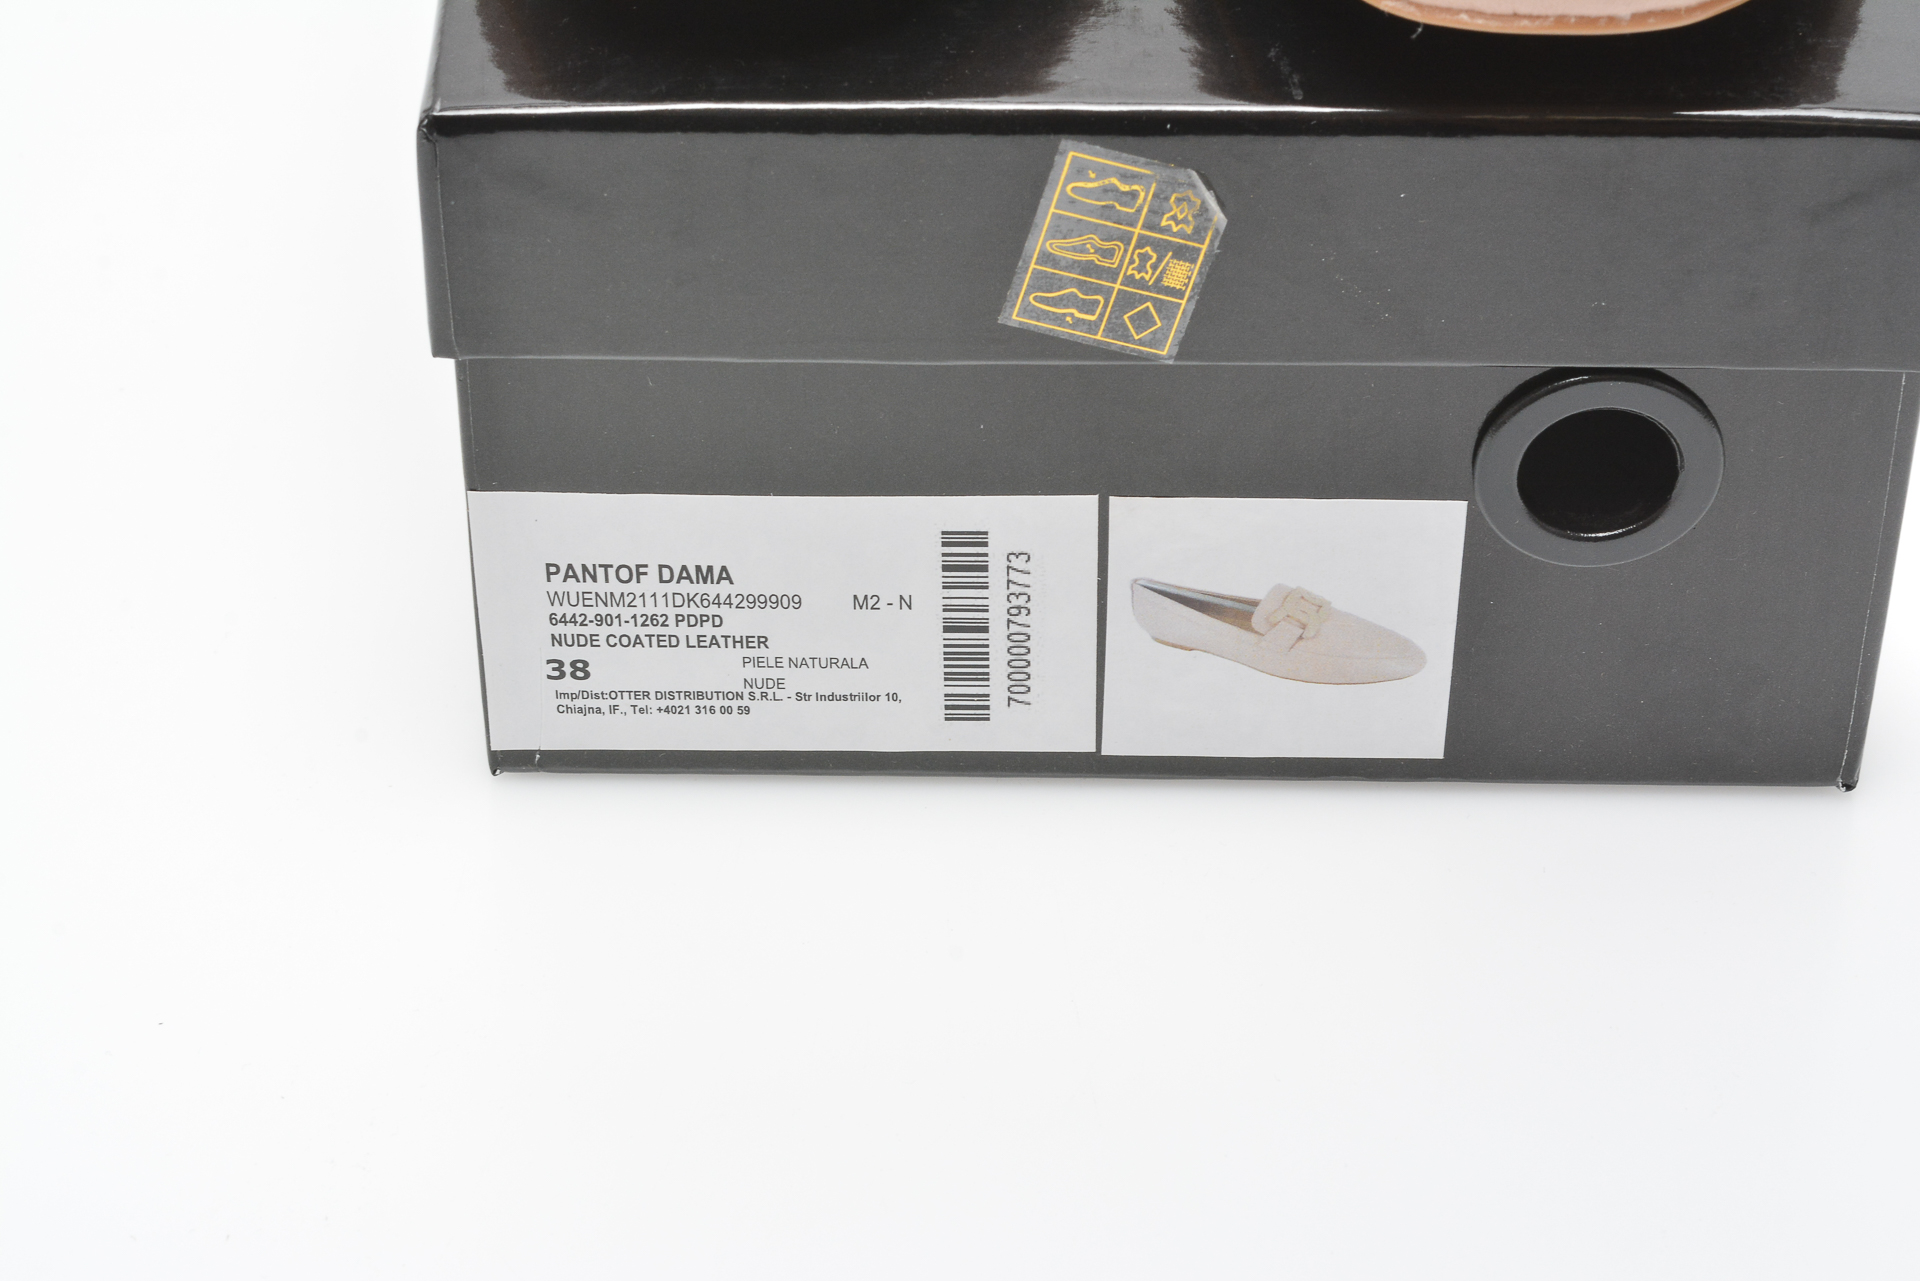 Pantofi FLAVIA PASSINI nude, 6442, din piele naturala Flavia Passini